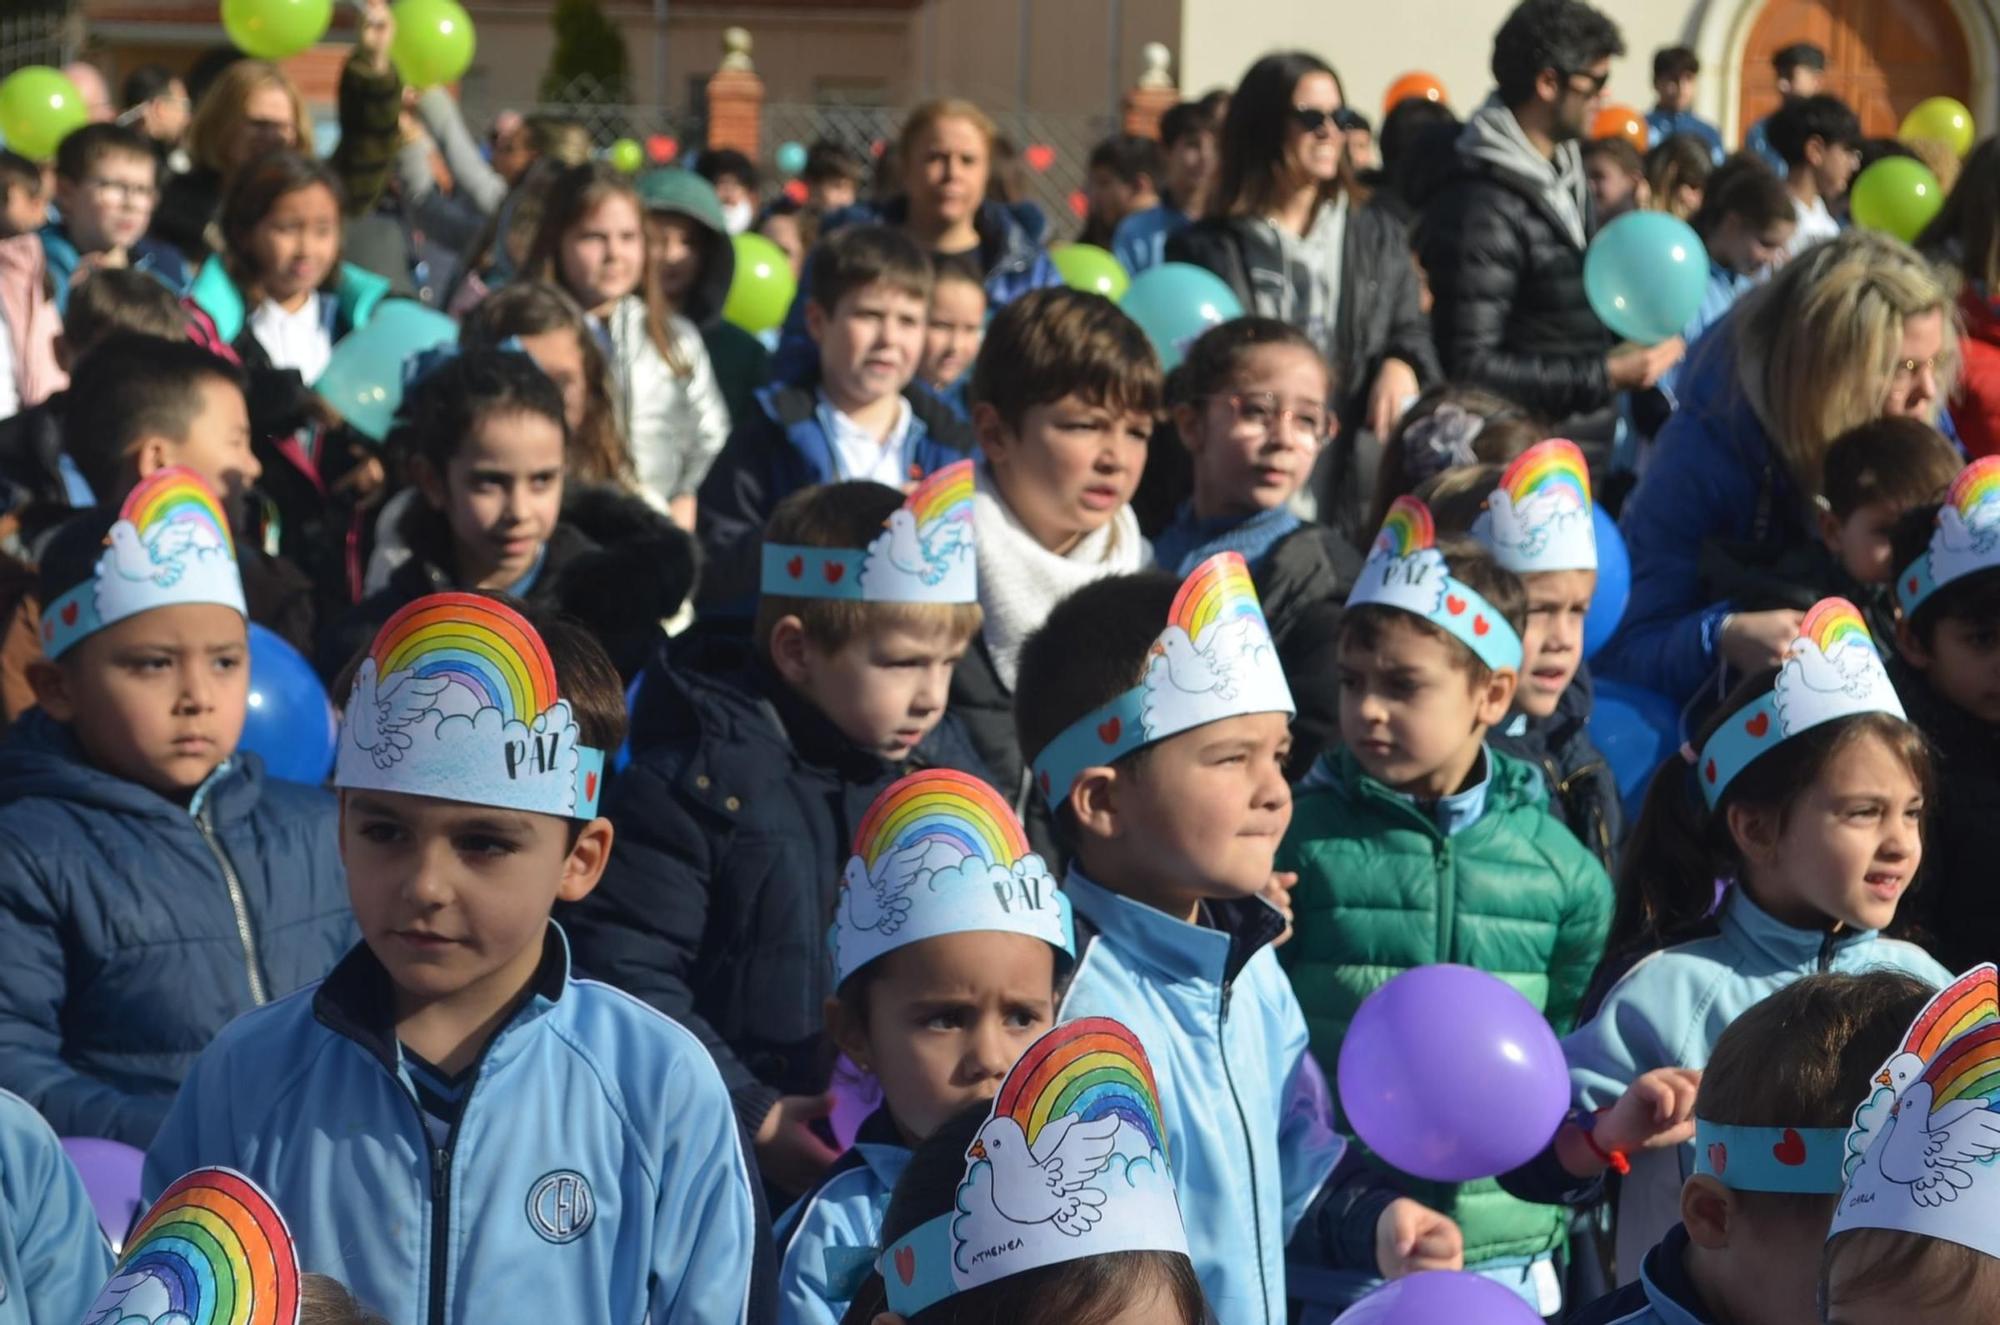 GALERÍA | Los colegios e institutos de Benavente celebran el Día de la Paz